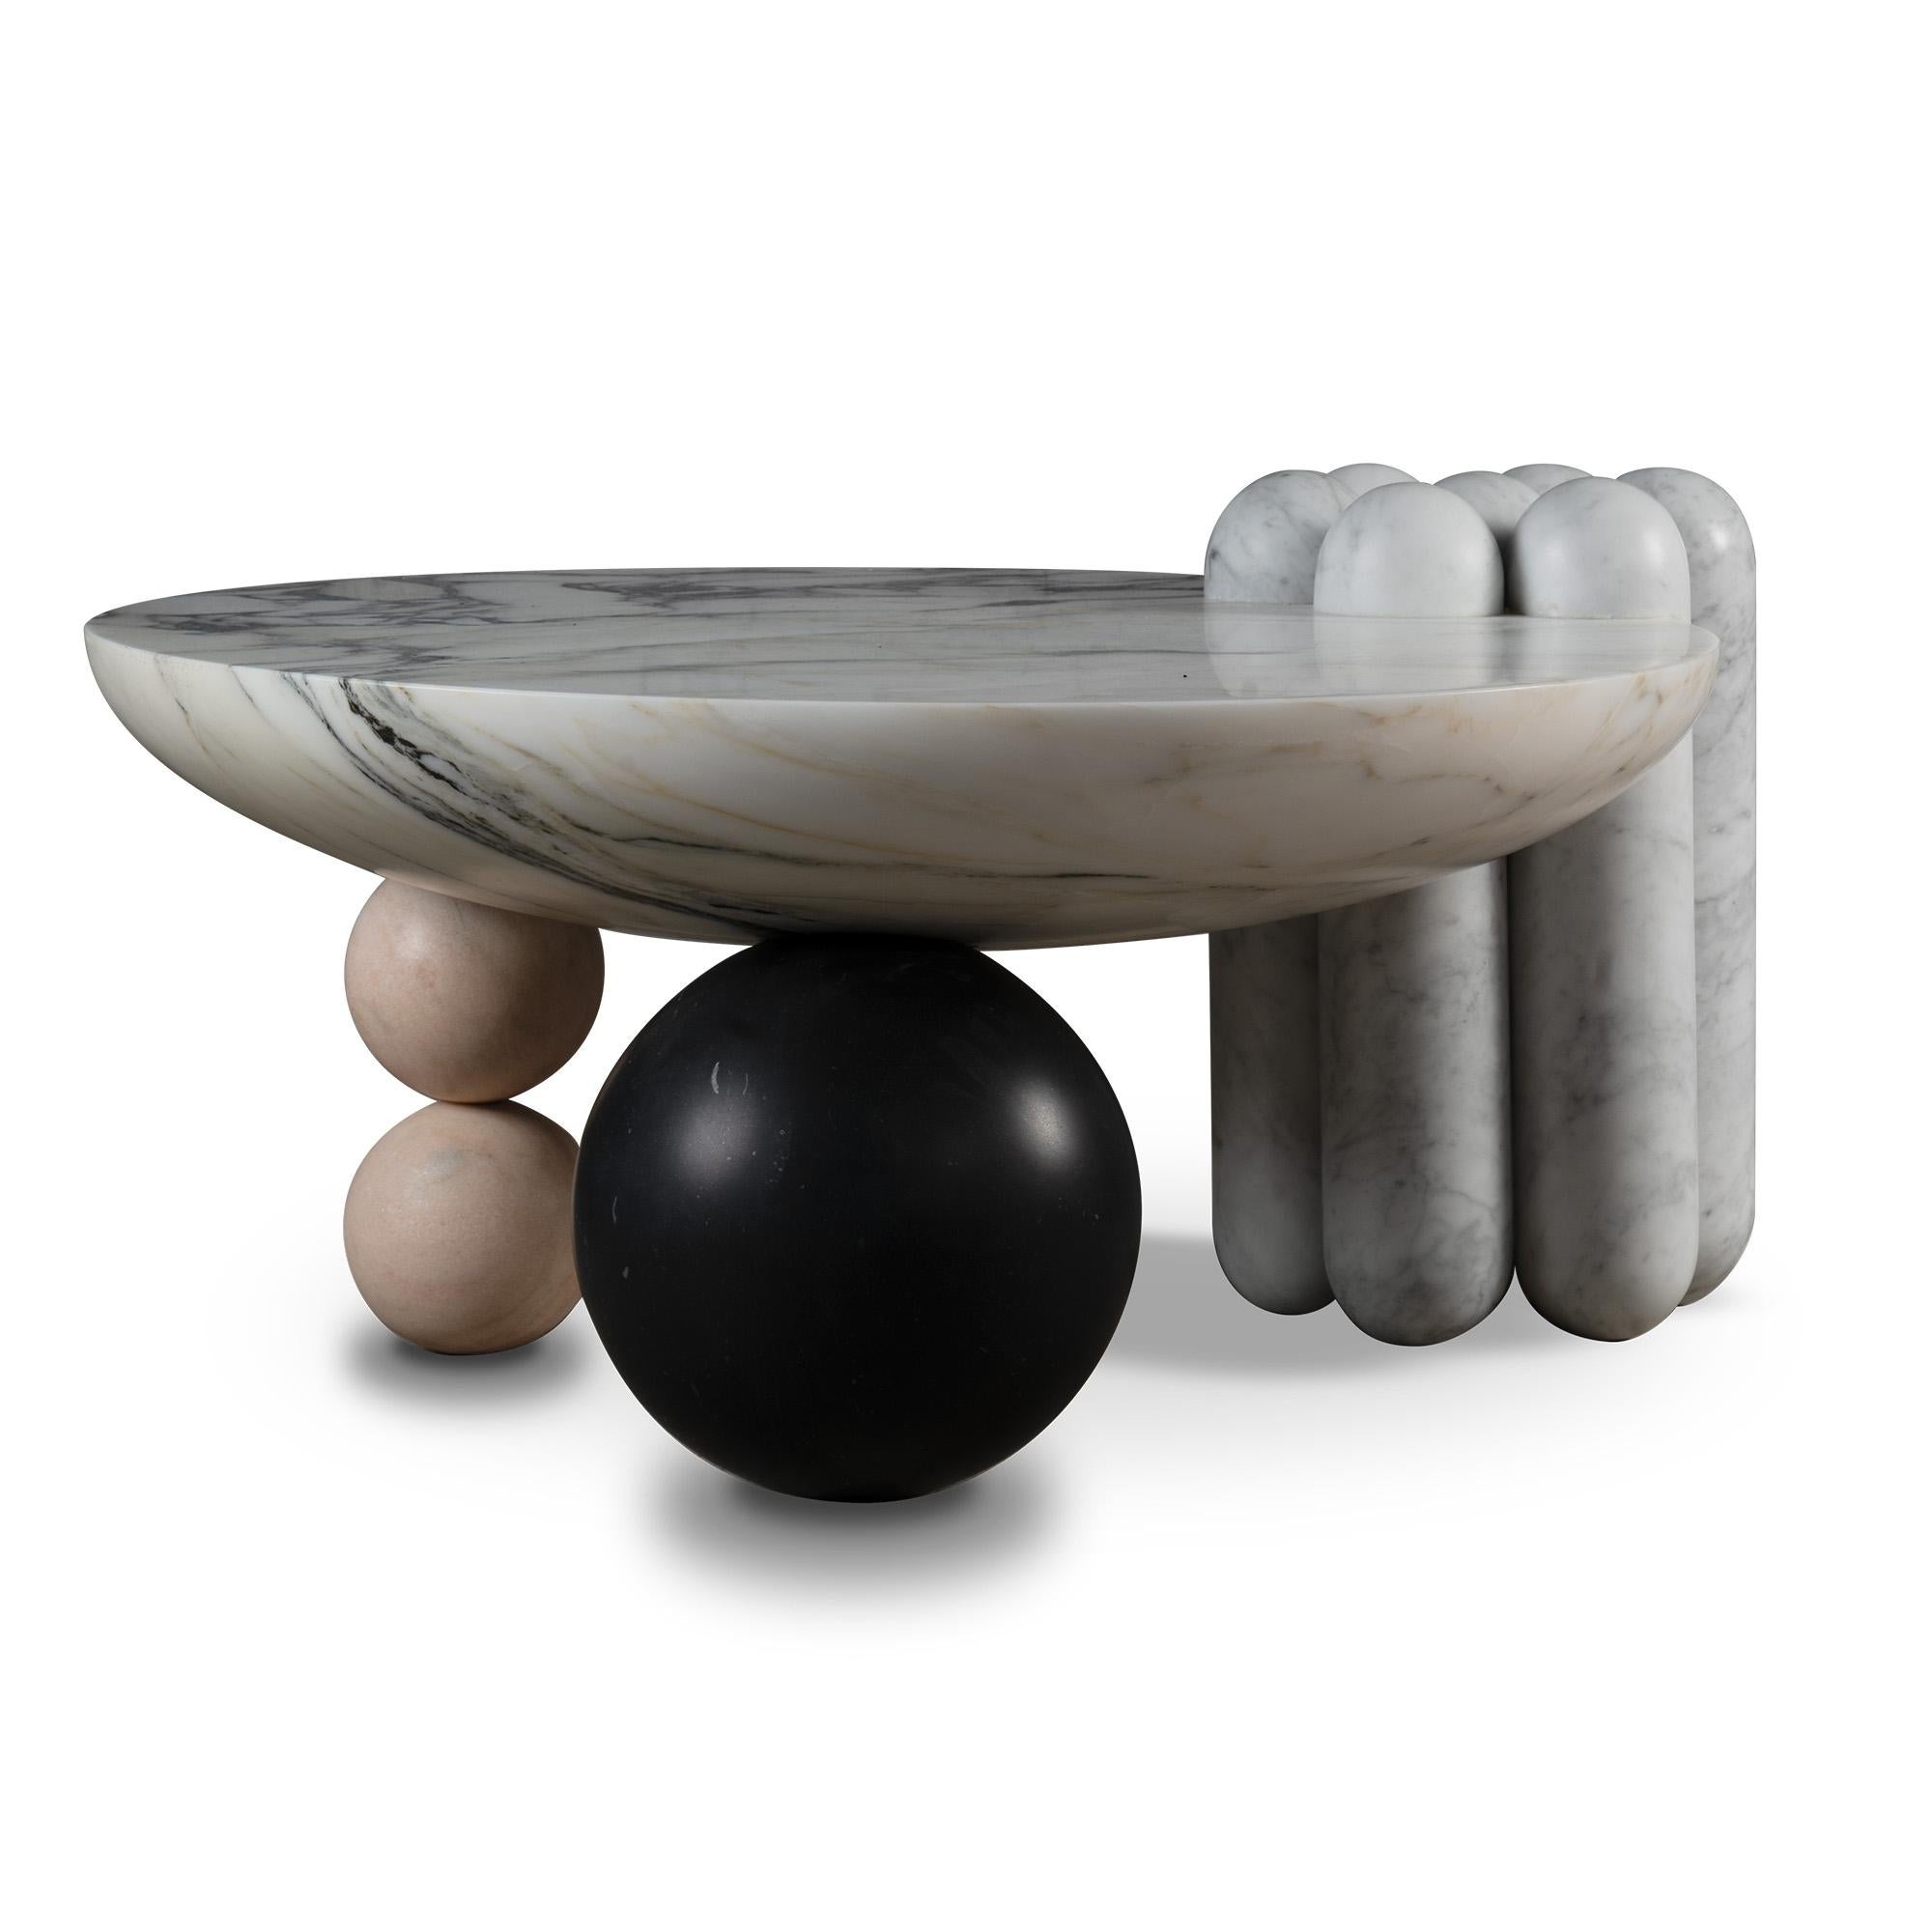 La table basse en marbre Patisserie est un ensemble de différentes formes inspirées de la pâtisserie - un pied latéral en forme de canelé et deux pieds en forme de bonbon soulèvent un plateau en forme de coupe pour un assemblage agréablement